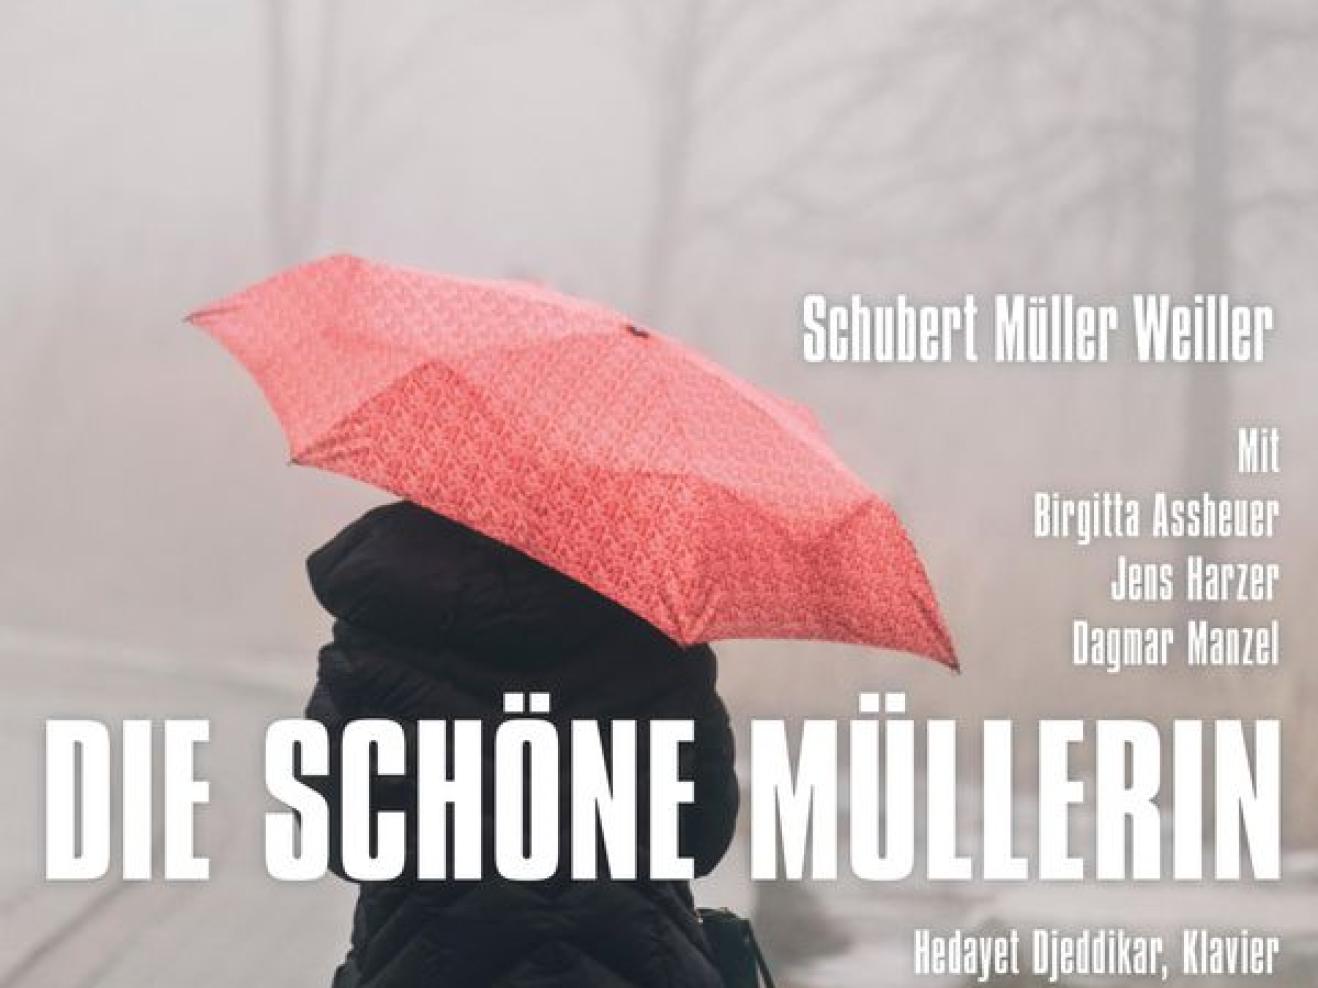 CD-Cover des Hörbuchs „Die schöne Müllerin“